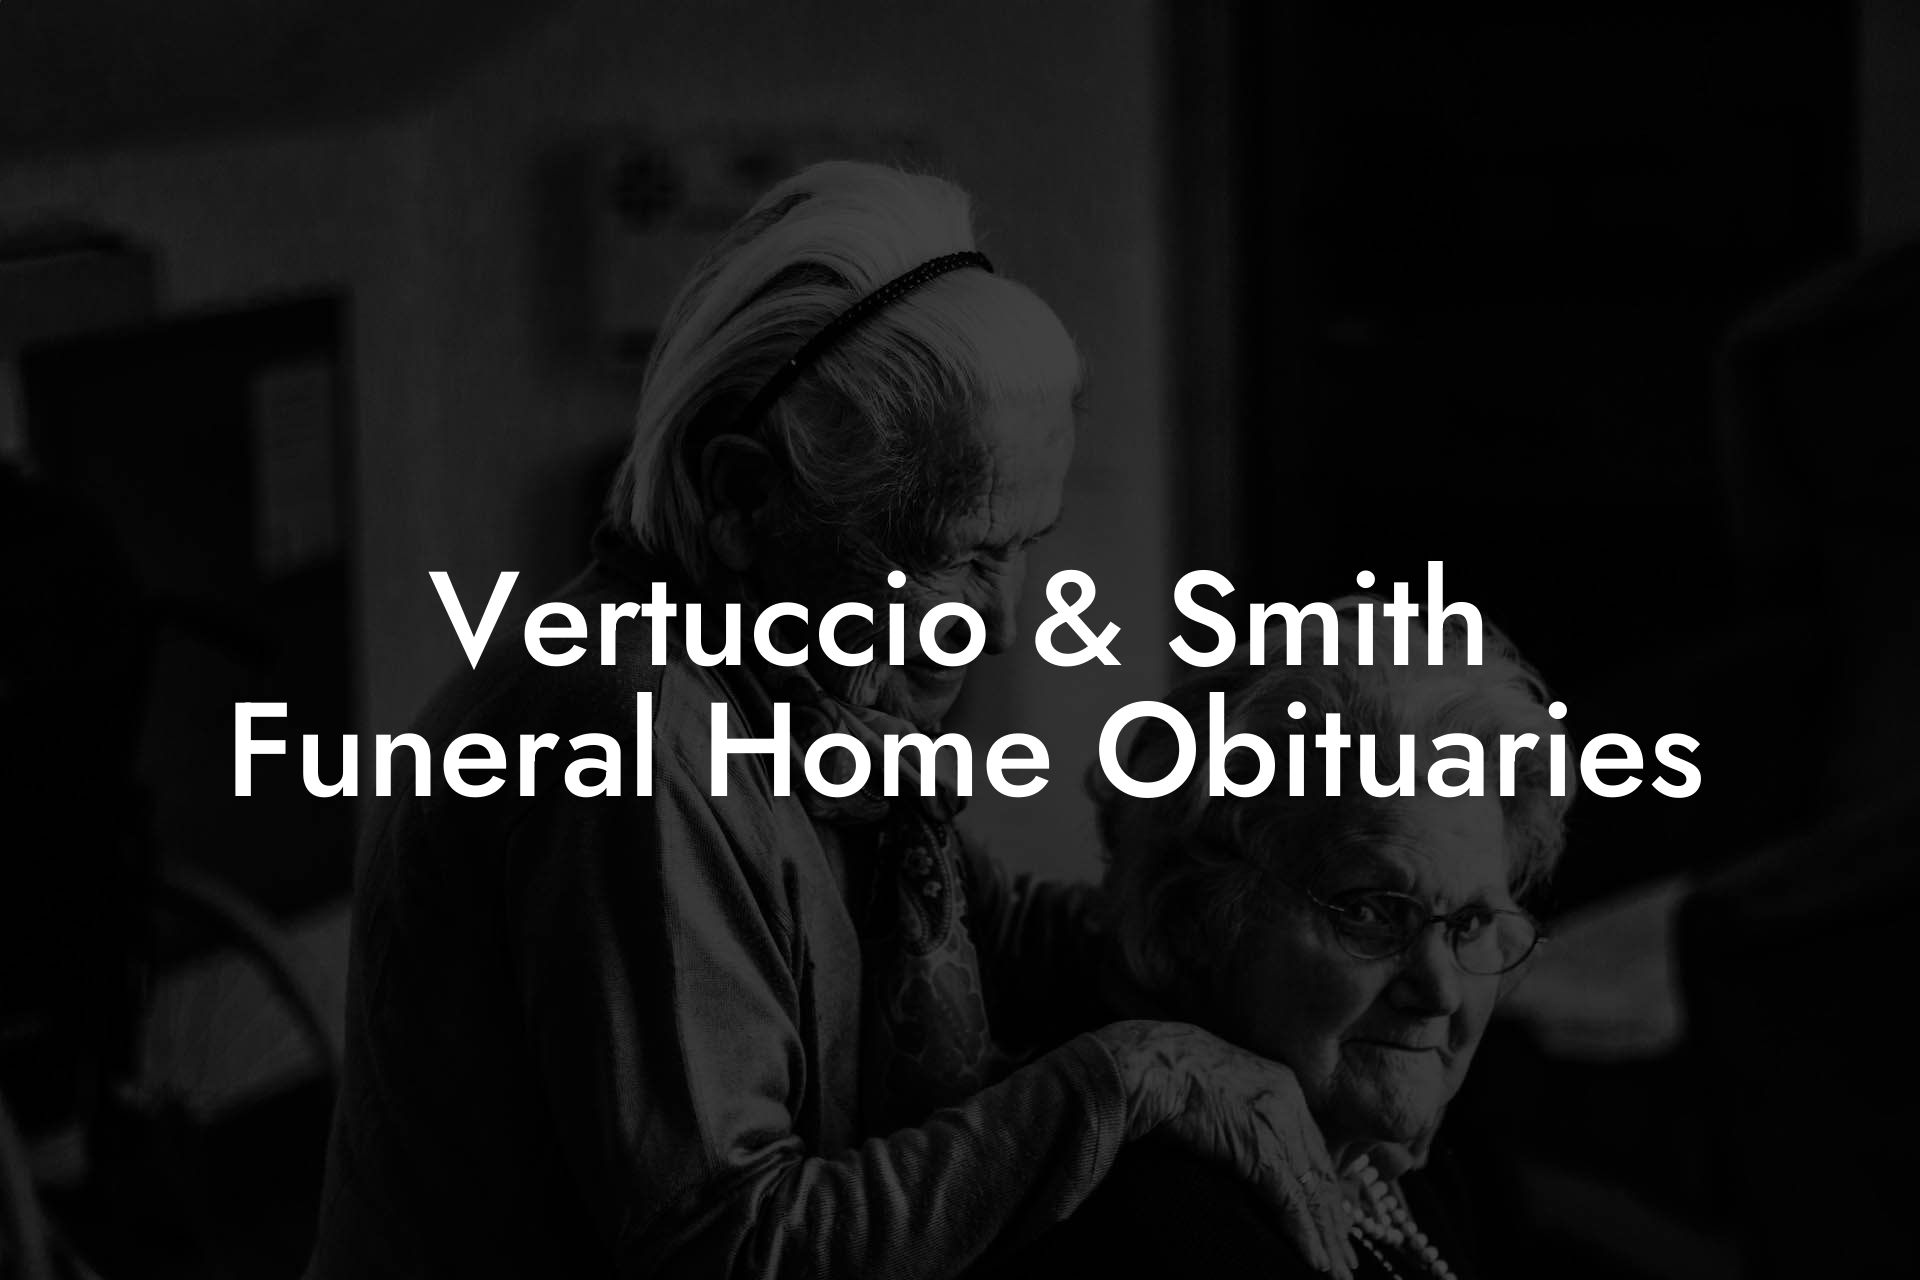 Vertuccio & Smith Funeral Home Obituaries